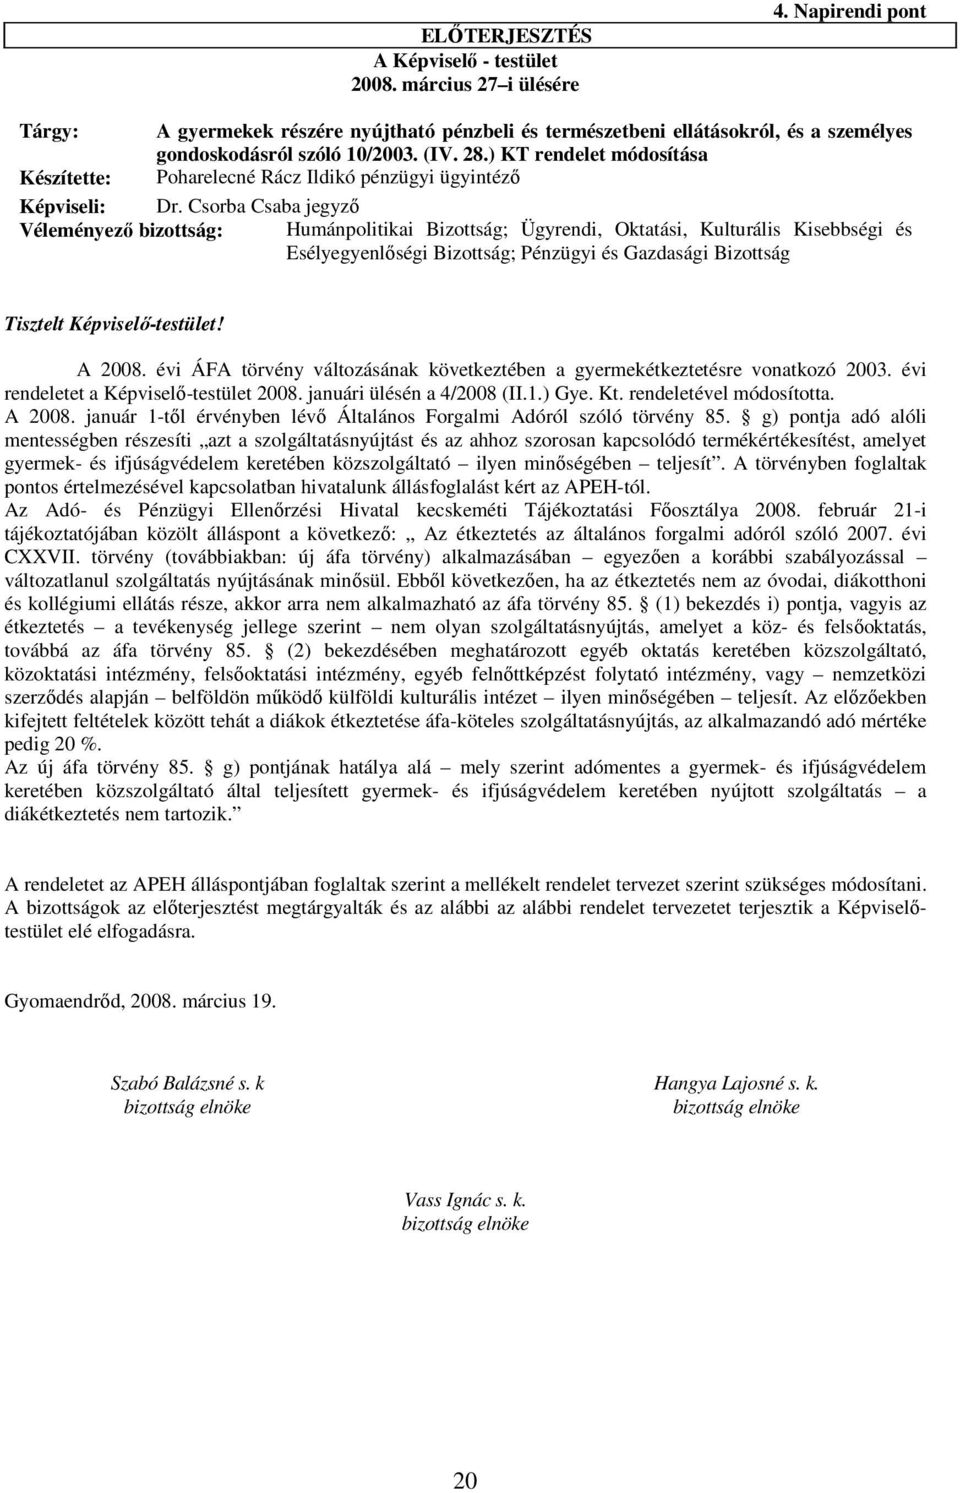 ) KT rendelet módosítása Készítette: Poharelecné Rácz Ildikó pénzügyi ügyintéző Képviseli: Dr.